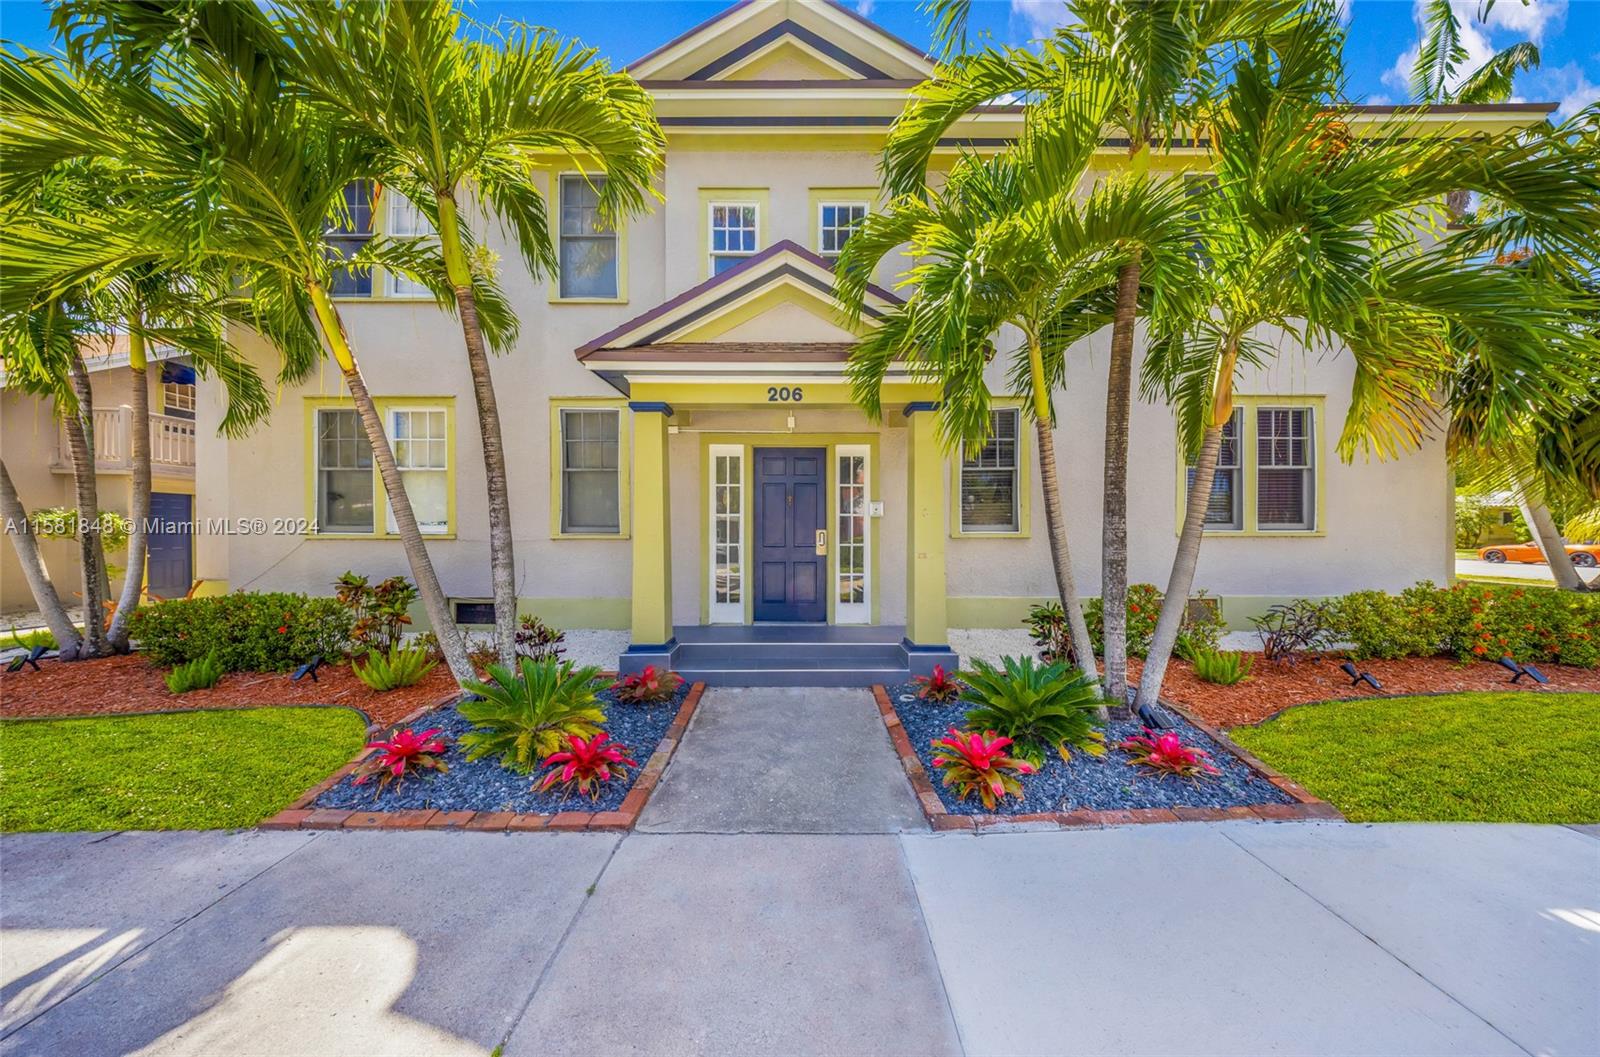 Rental Property at 206 S 15th Ave, Hollywood, Broward County, Florida -  - $1,599,000 MO.